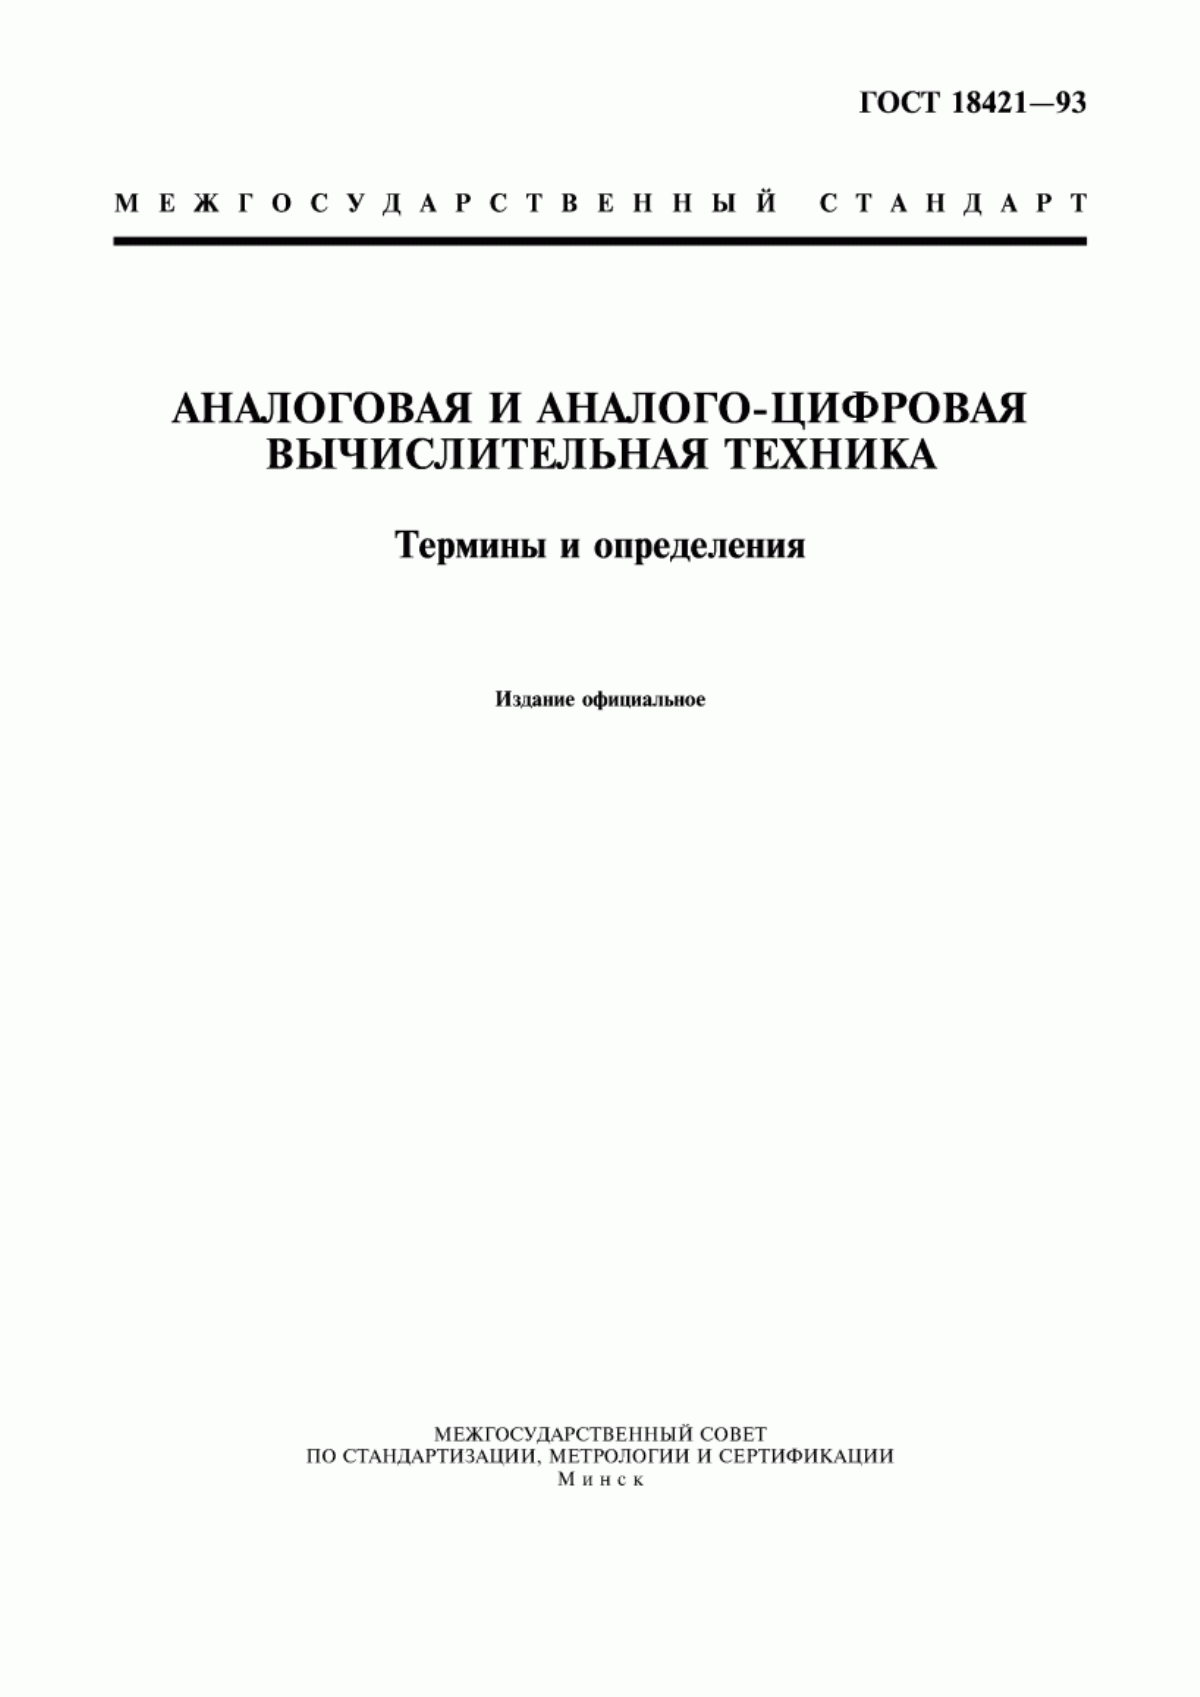 ГОСТ 18421-93 Аналоговая и аналого-цифровая вычислительная техника. Термины и определения